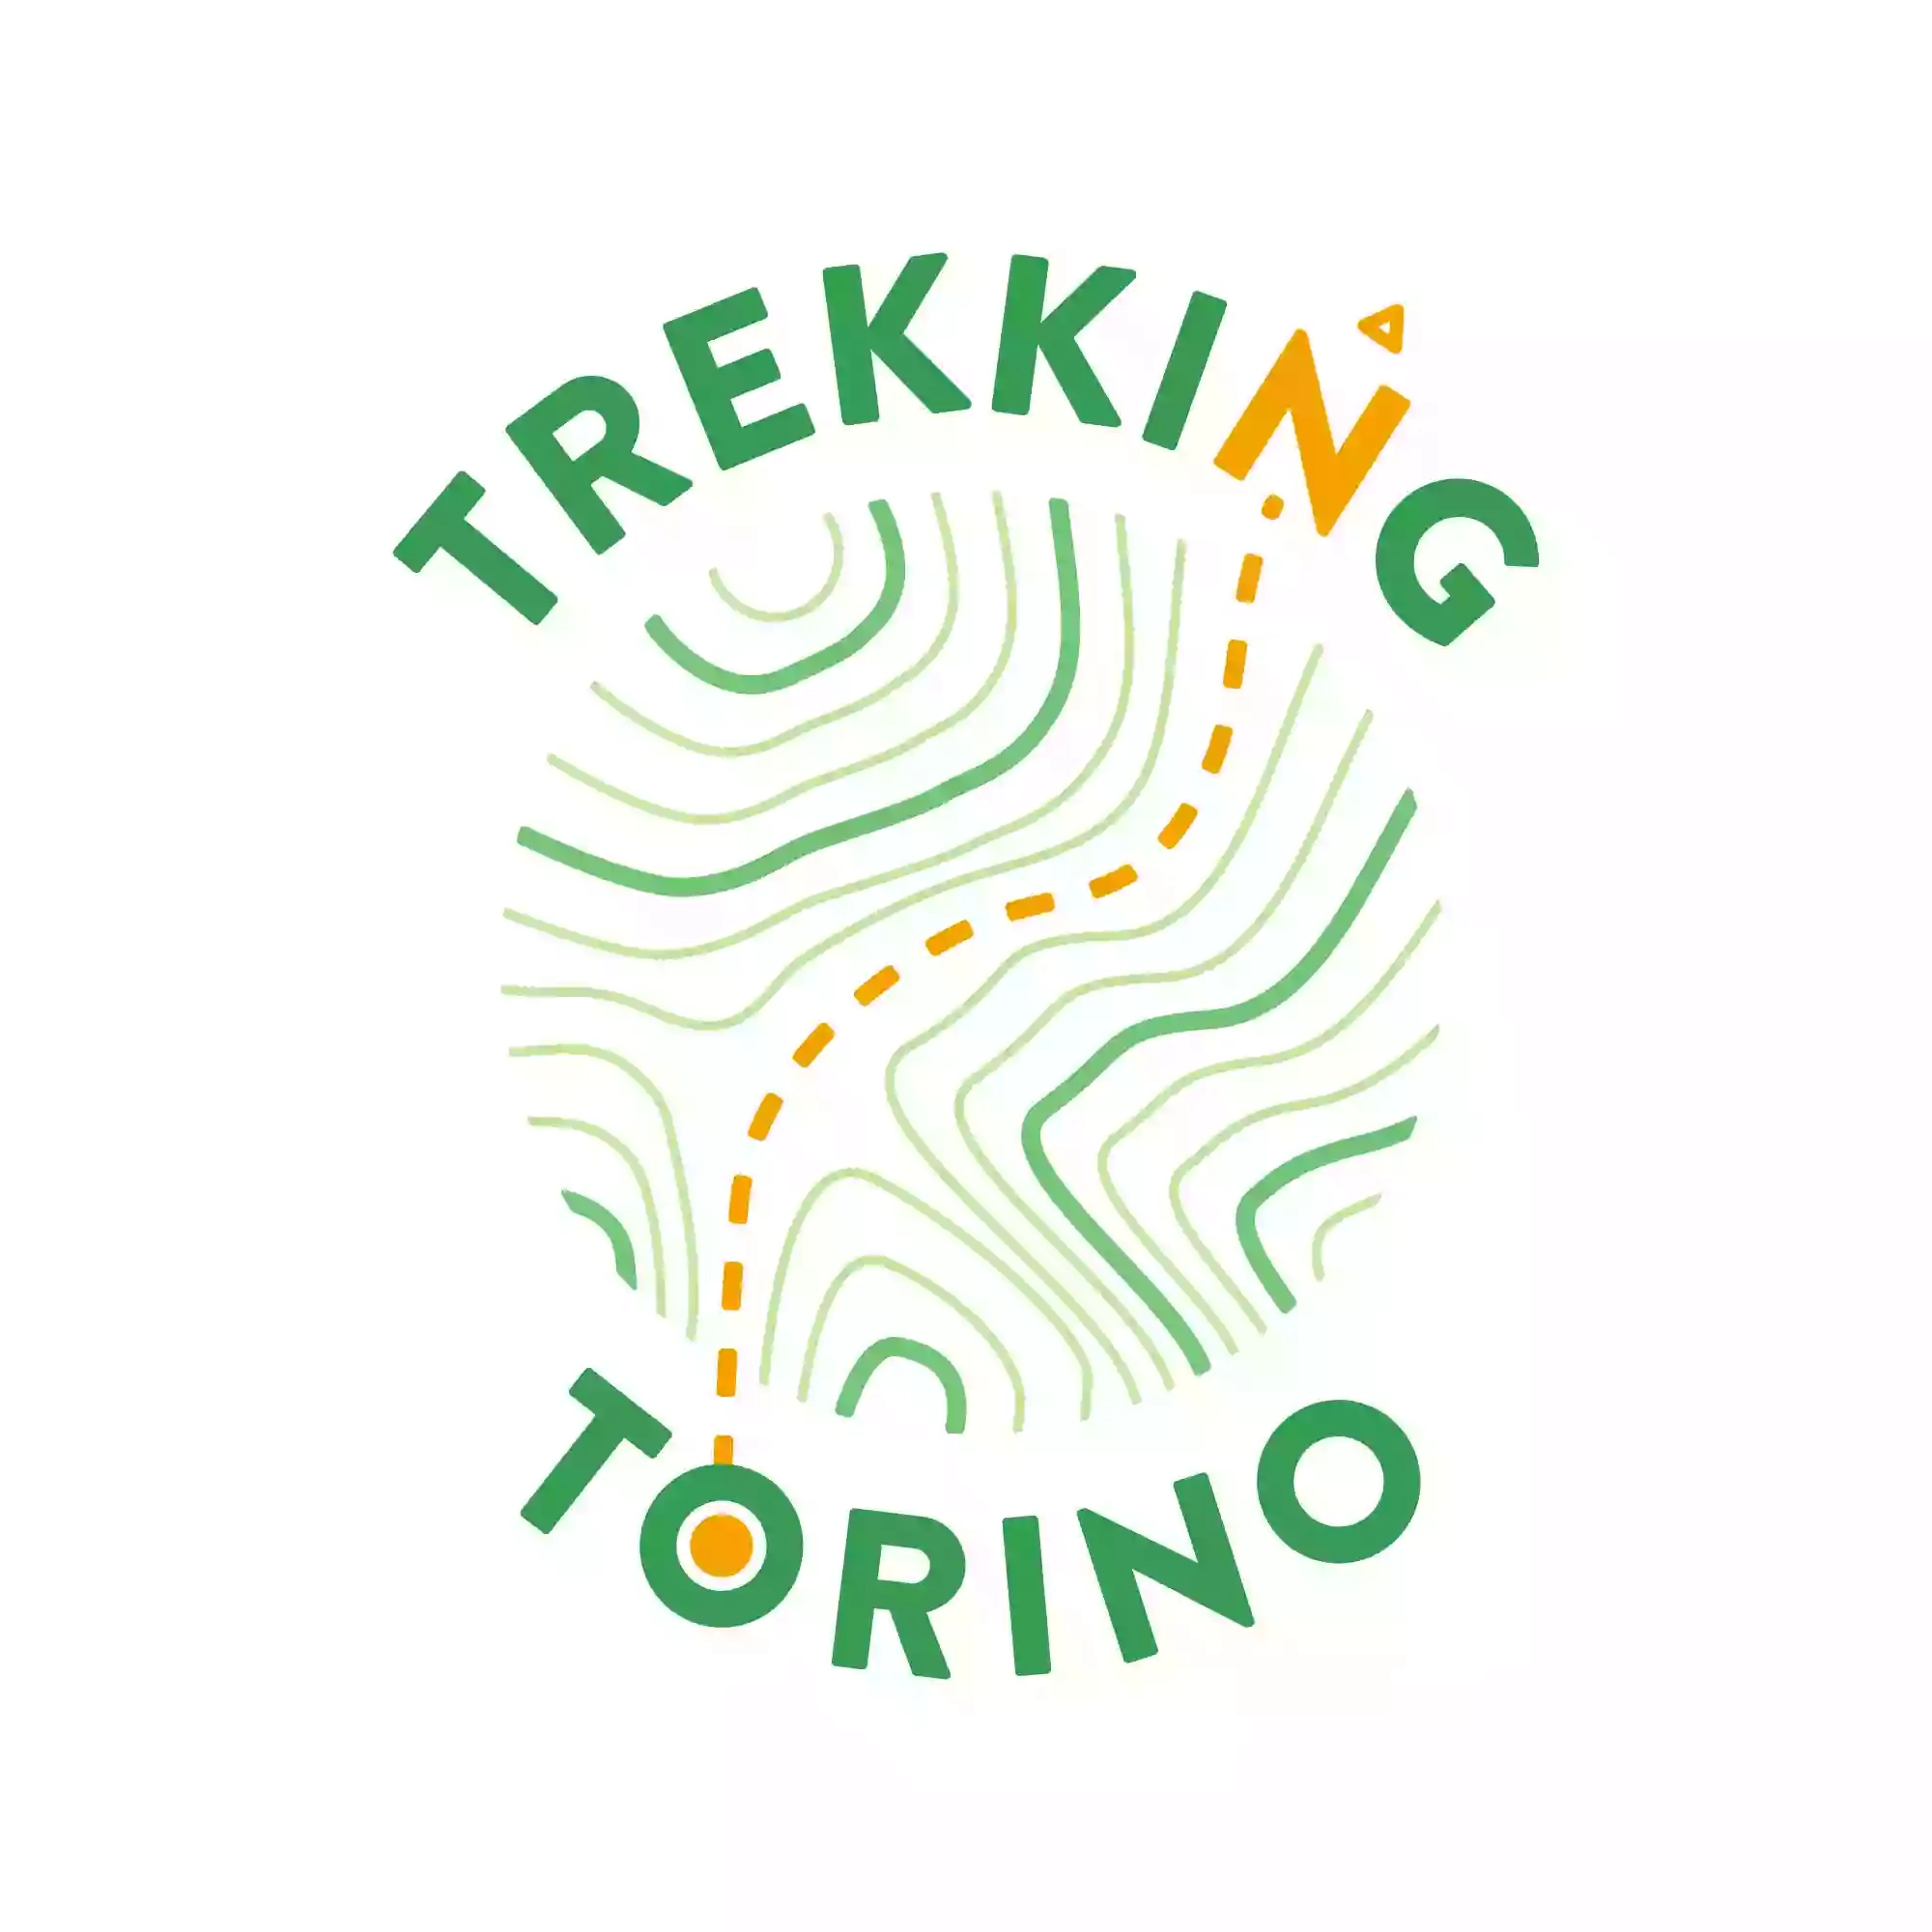 Trekking Torino